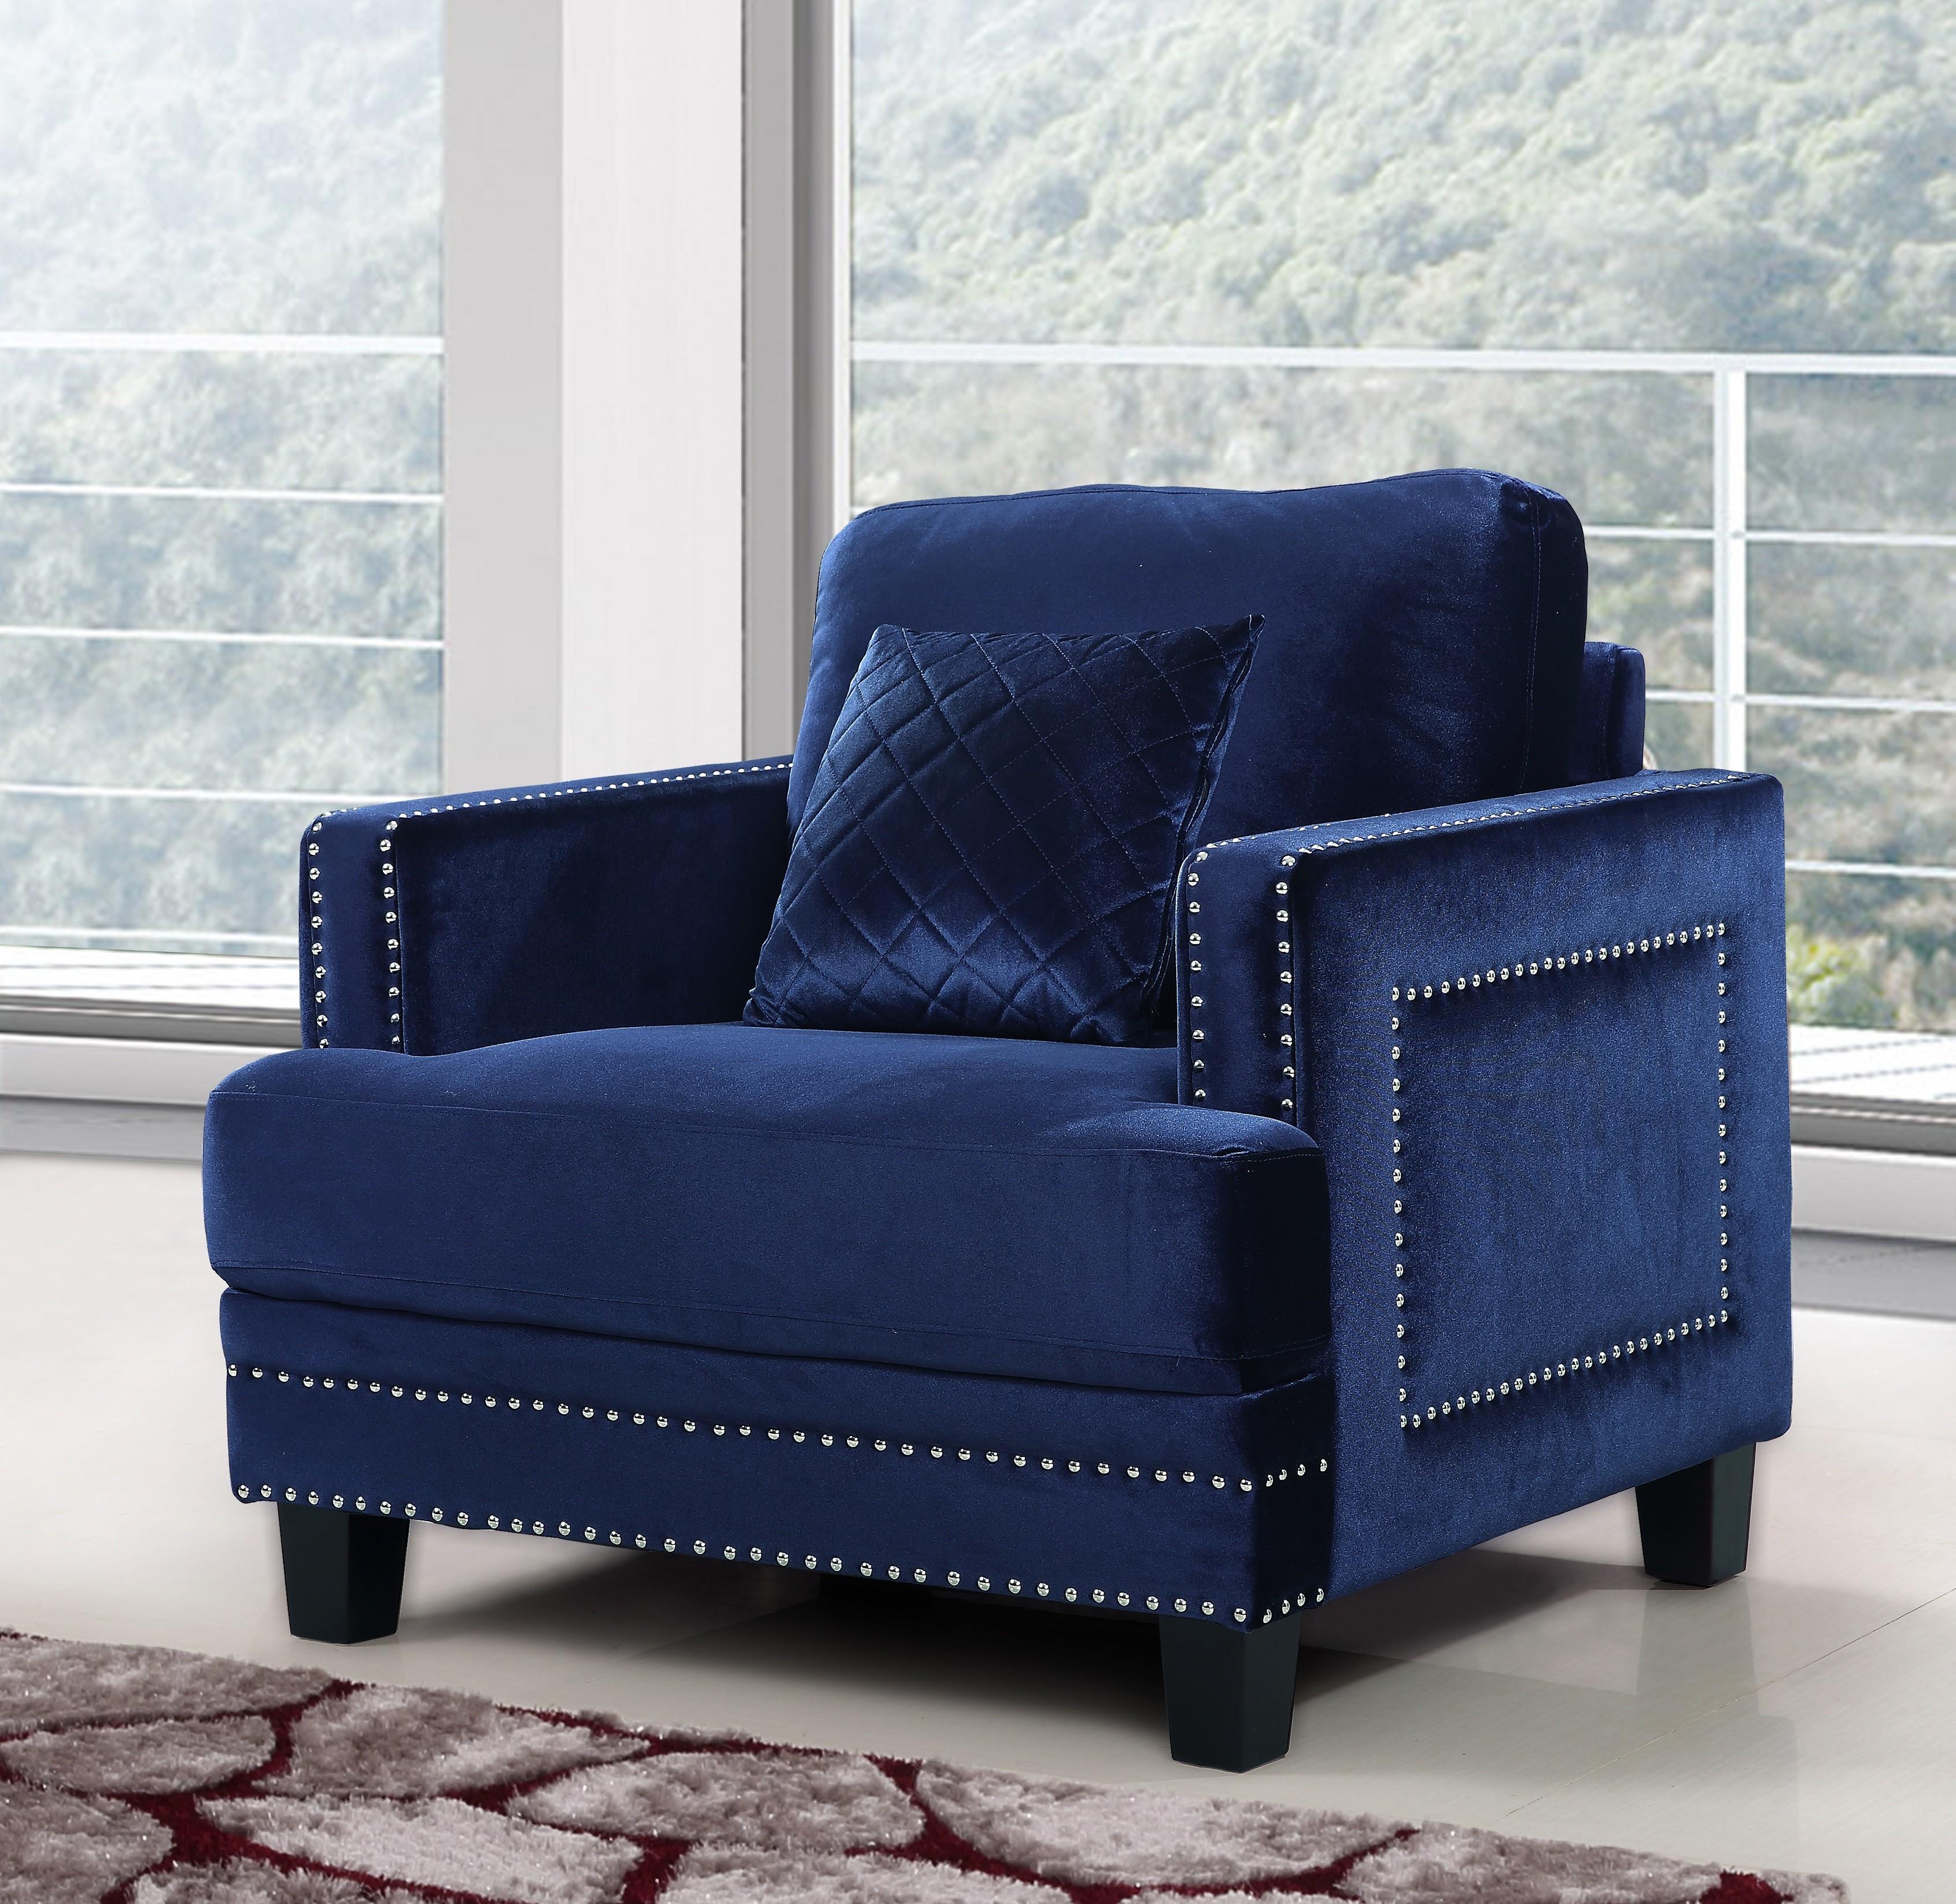 

                    
Meridian Furniture 655 Ferrara Sofa Loveseat and Chair Set Navy Velvet Purchase 
